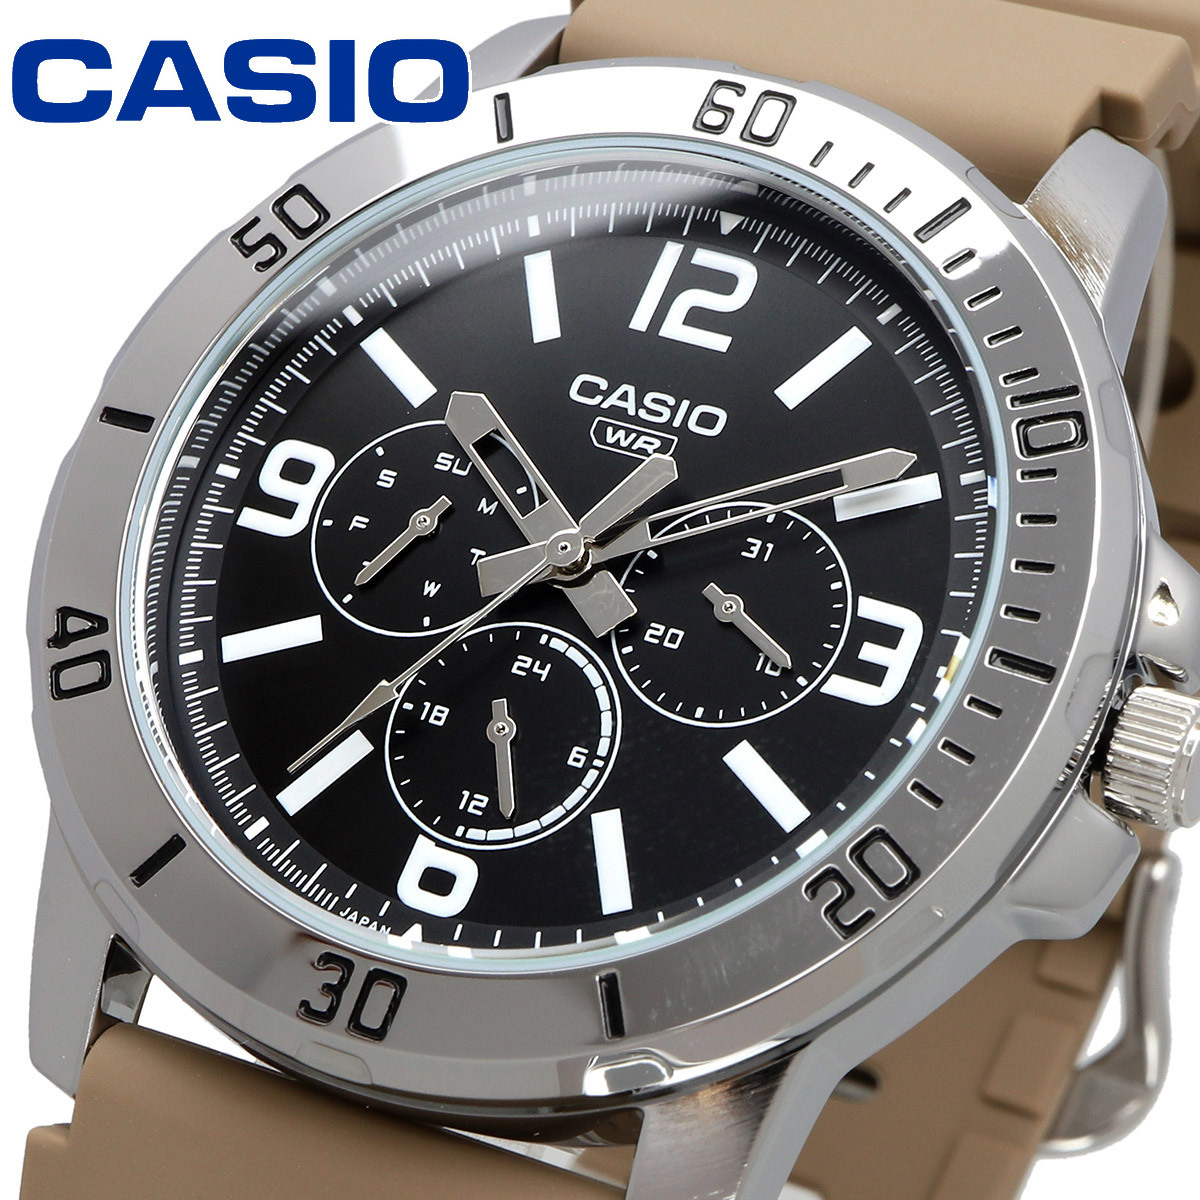 豪華ラッピング無料 チープカシオ メンズ 腕時計 カシオ CASIO チプカシ MTP-VD300-5B マルチカレンダー クォーツ 海外モデル その他